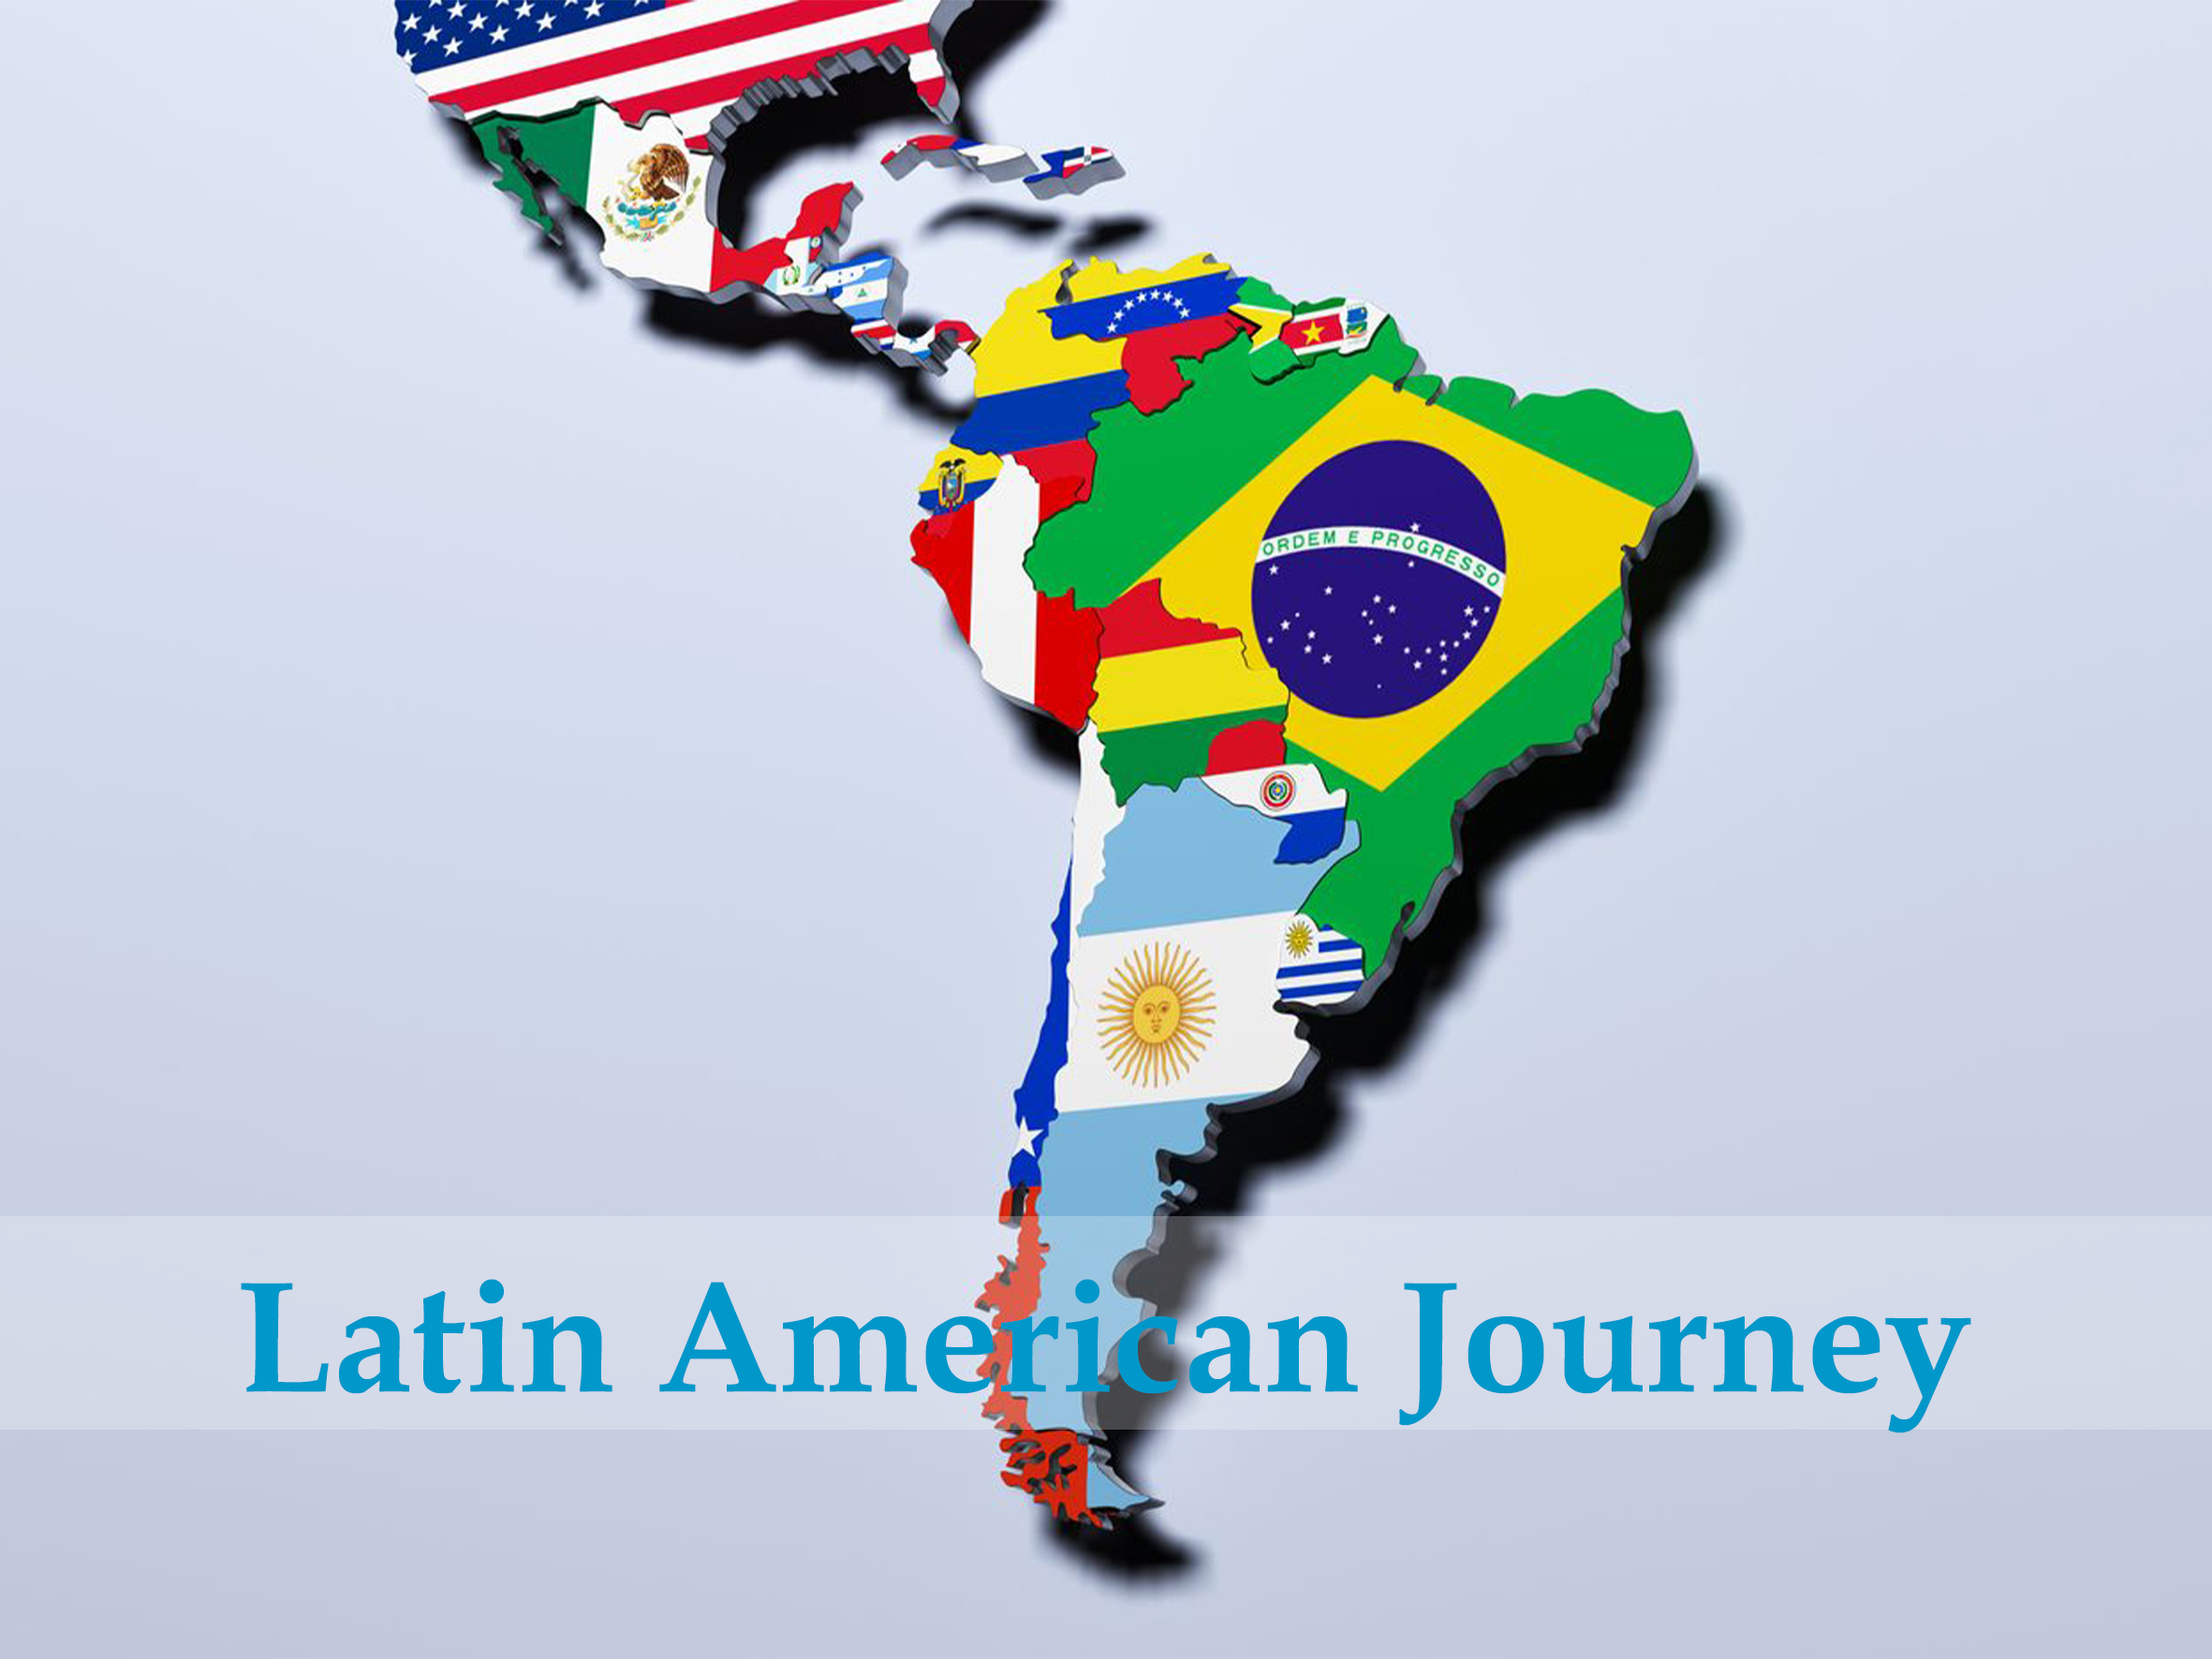 شنگھائی جے پی ایس میڈیکل کمپنی لمیٹڈ نے لاطینی امریکہ اور ریاستہائے متحدہ کے ایگزیکٹو دورے کے ساتھ عالمی رسائی کو بڑھایا